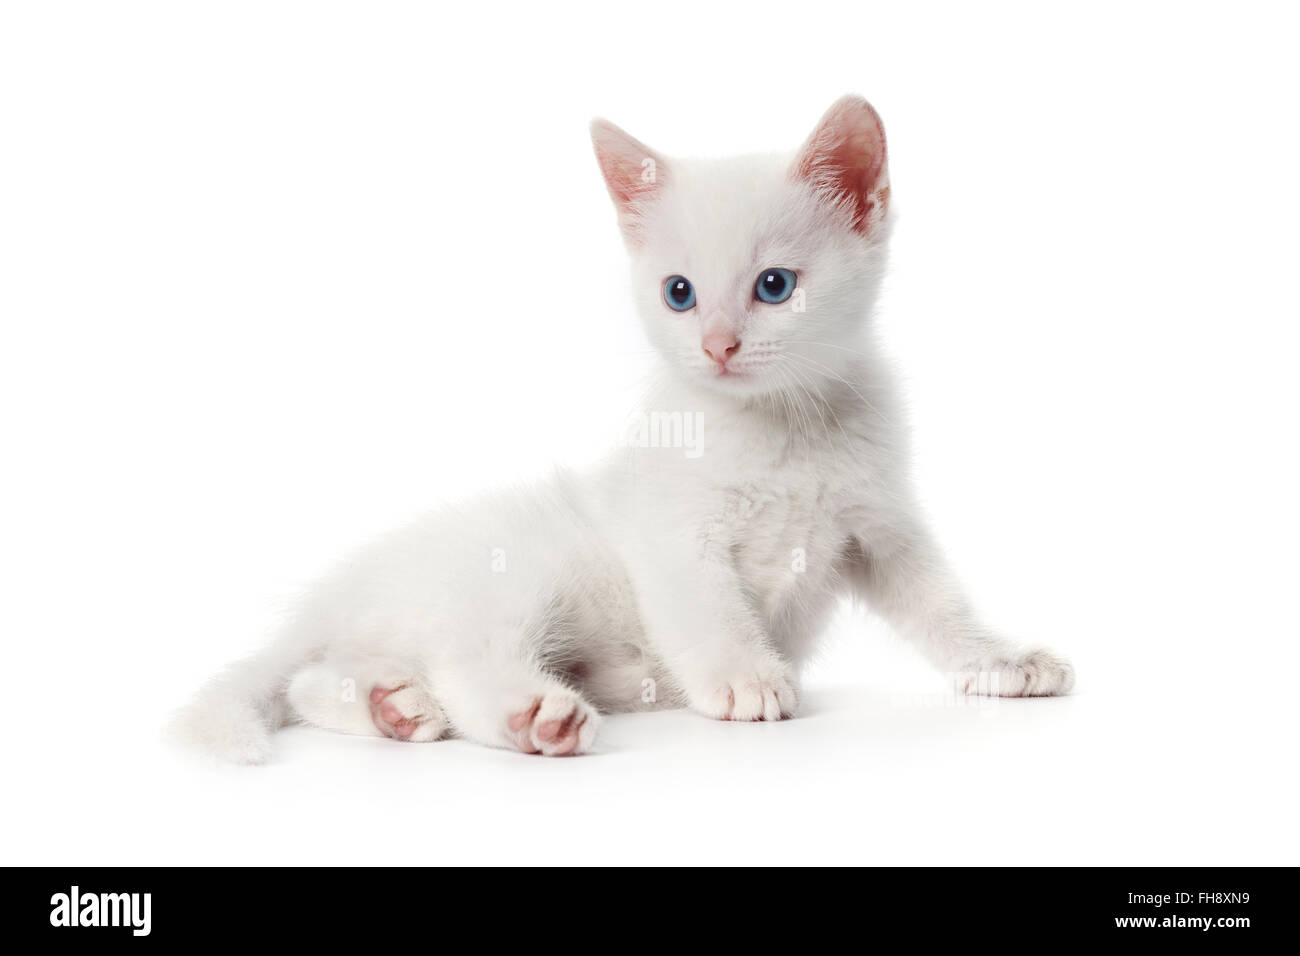 Mignon chaton blanc aux yeux bleus sur fond blanc Banque D'Images